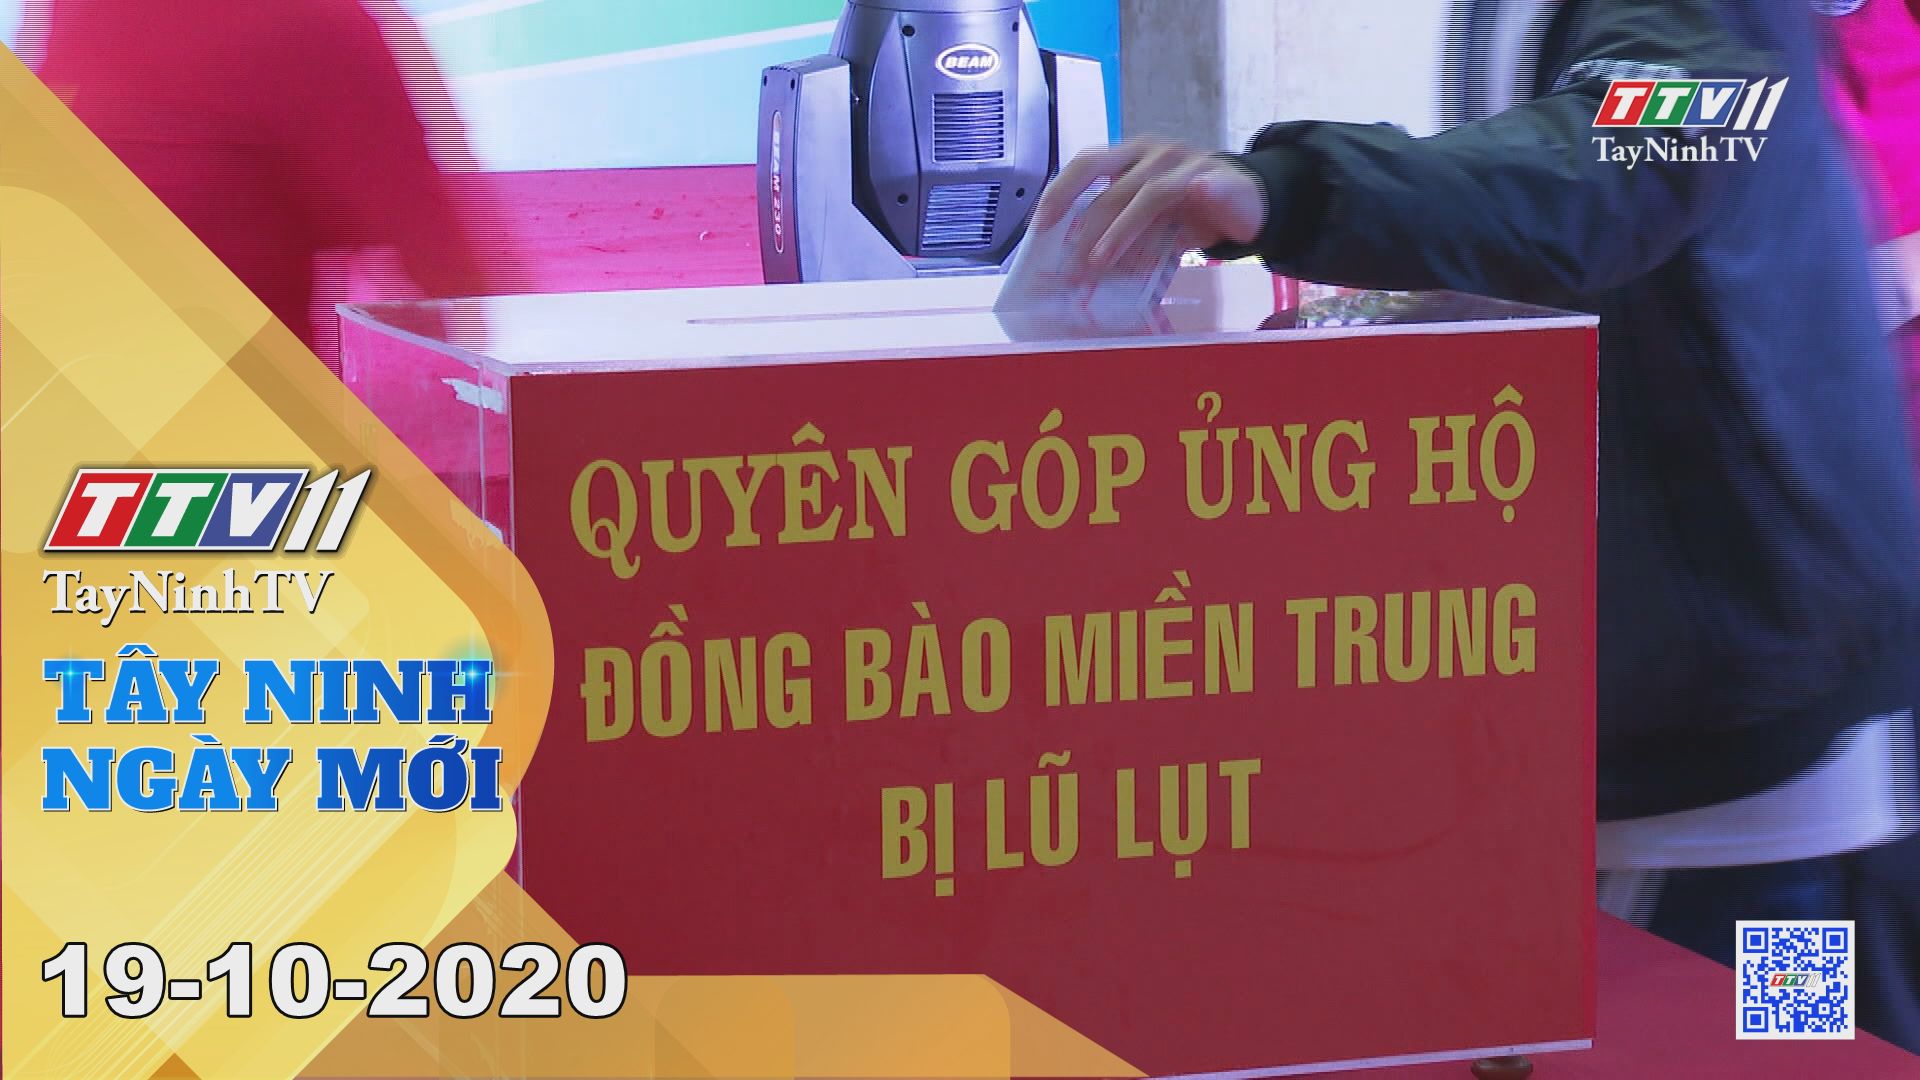 Tây Ninh Ngày Mới 19-10-2020 | Tin tức hôm nay | TayNinhTV